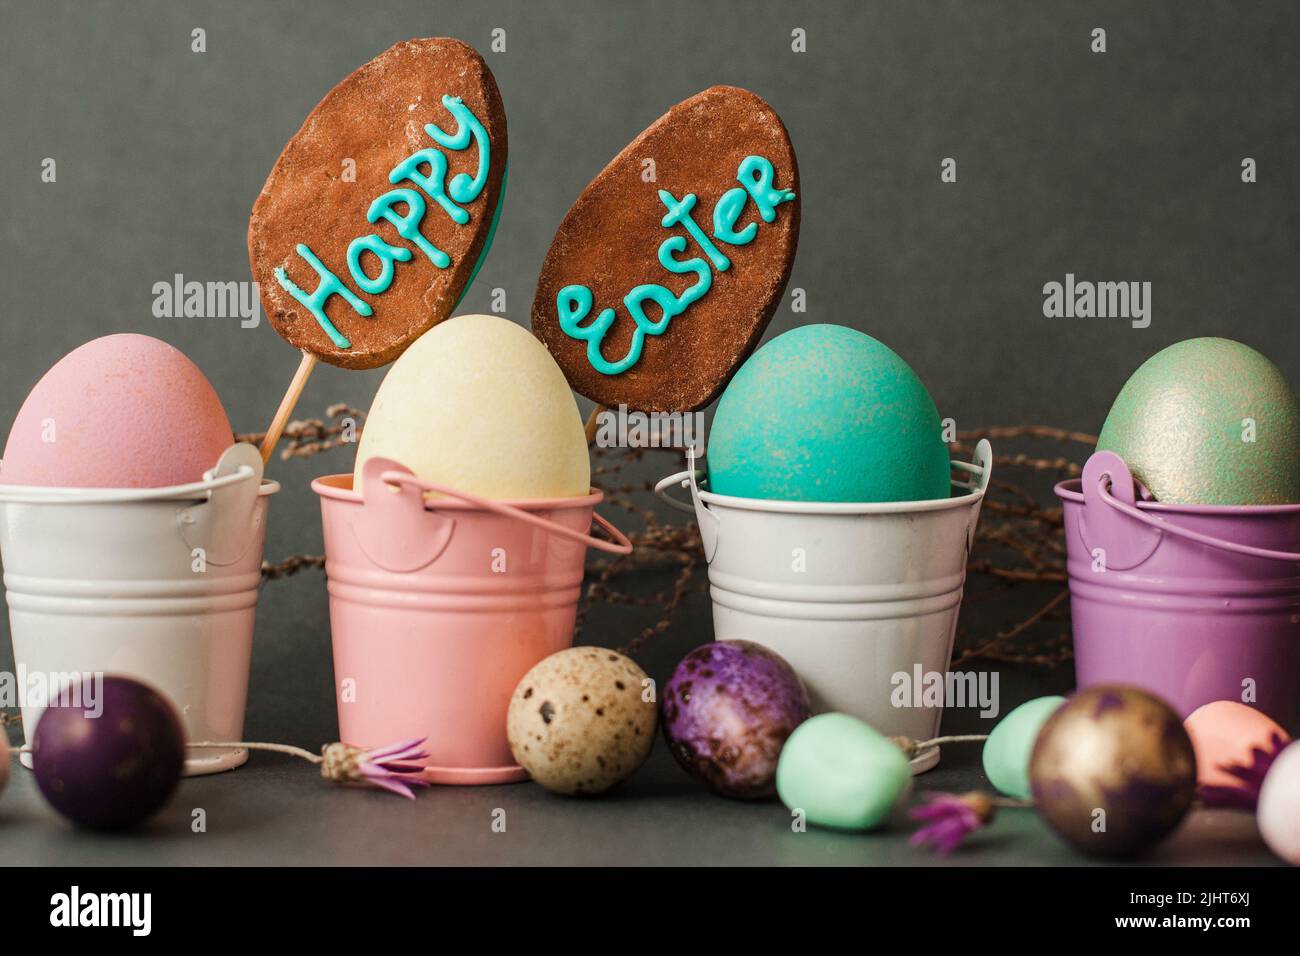 Eier in Eimern einfärben. Frohe ostern Hintergrund. Stockfoto